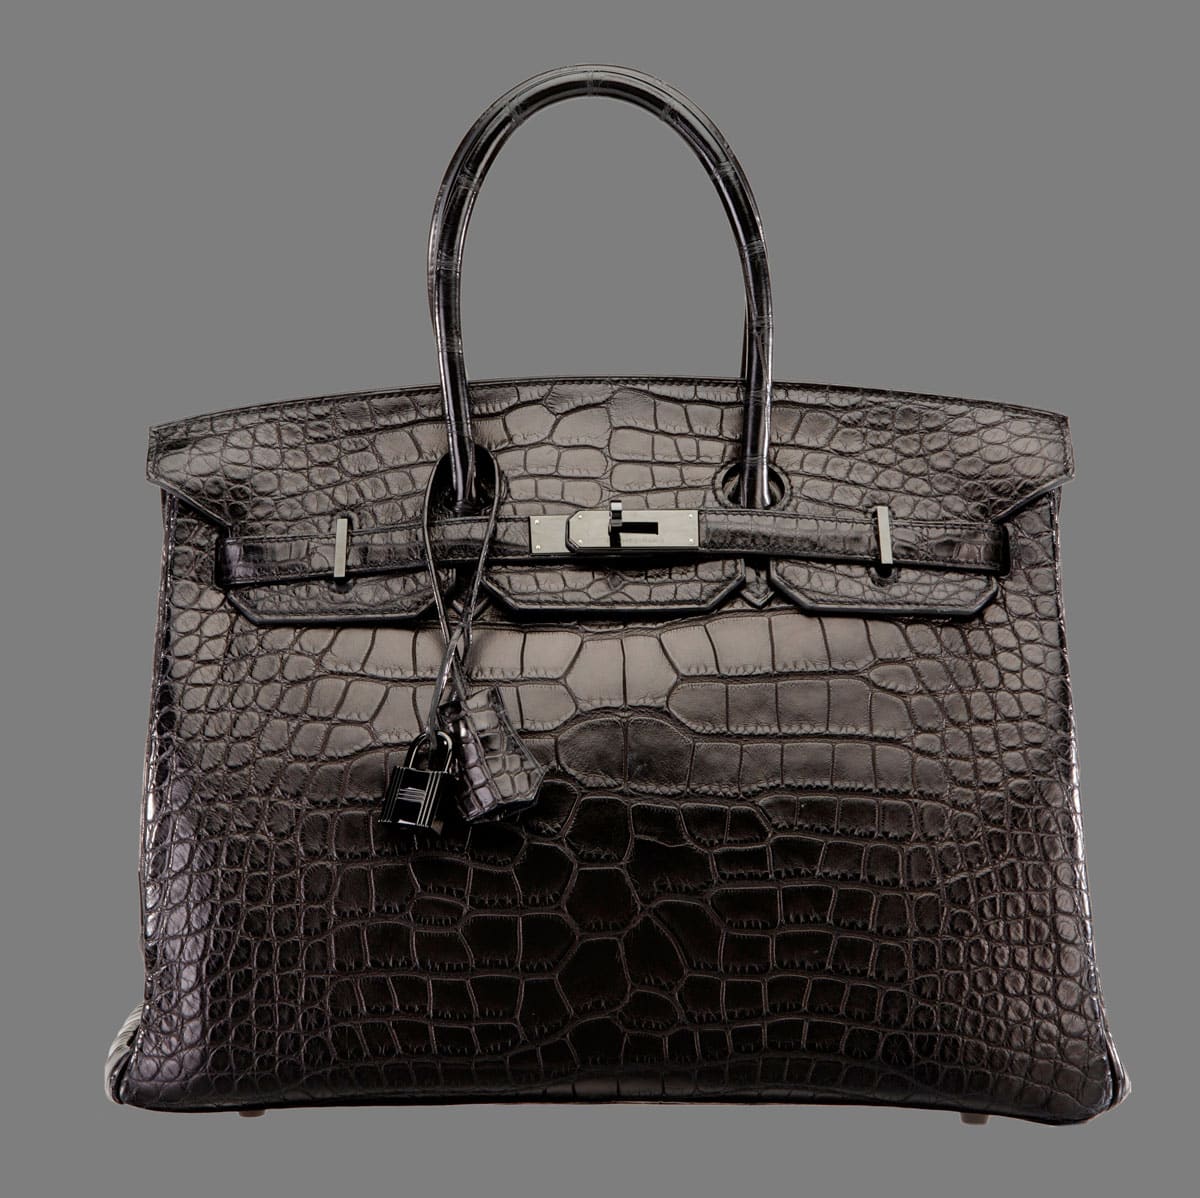 Hermes 35cm Matte So Black Alligator Birkin Bag with PVD Hardware